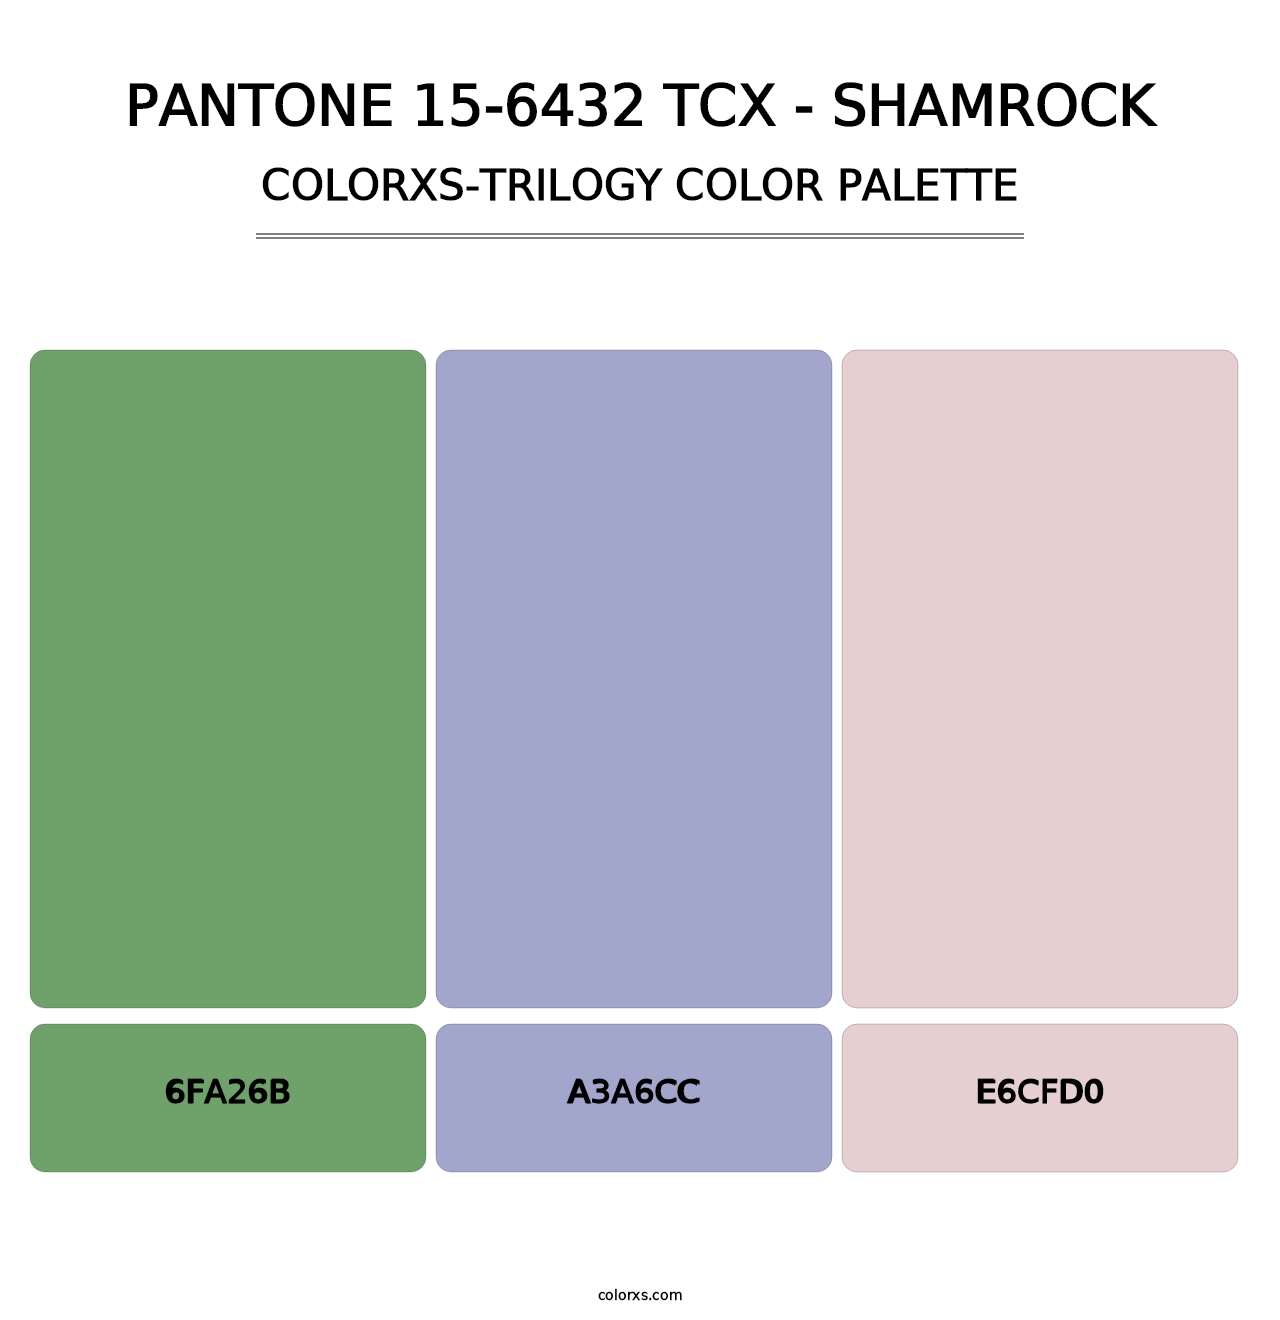 PANTONE 15-6432 TCX - Shamrock - Colorxs Trilogy Palette